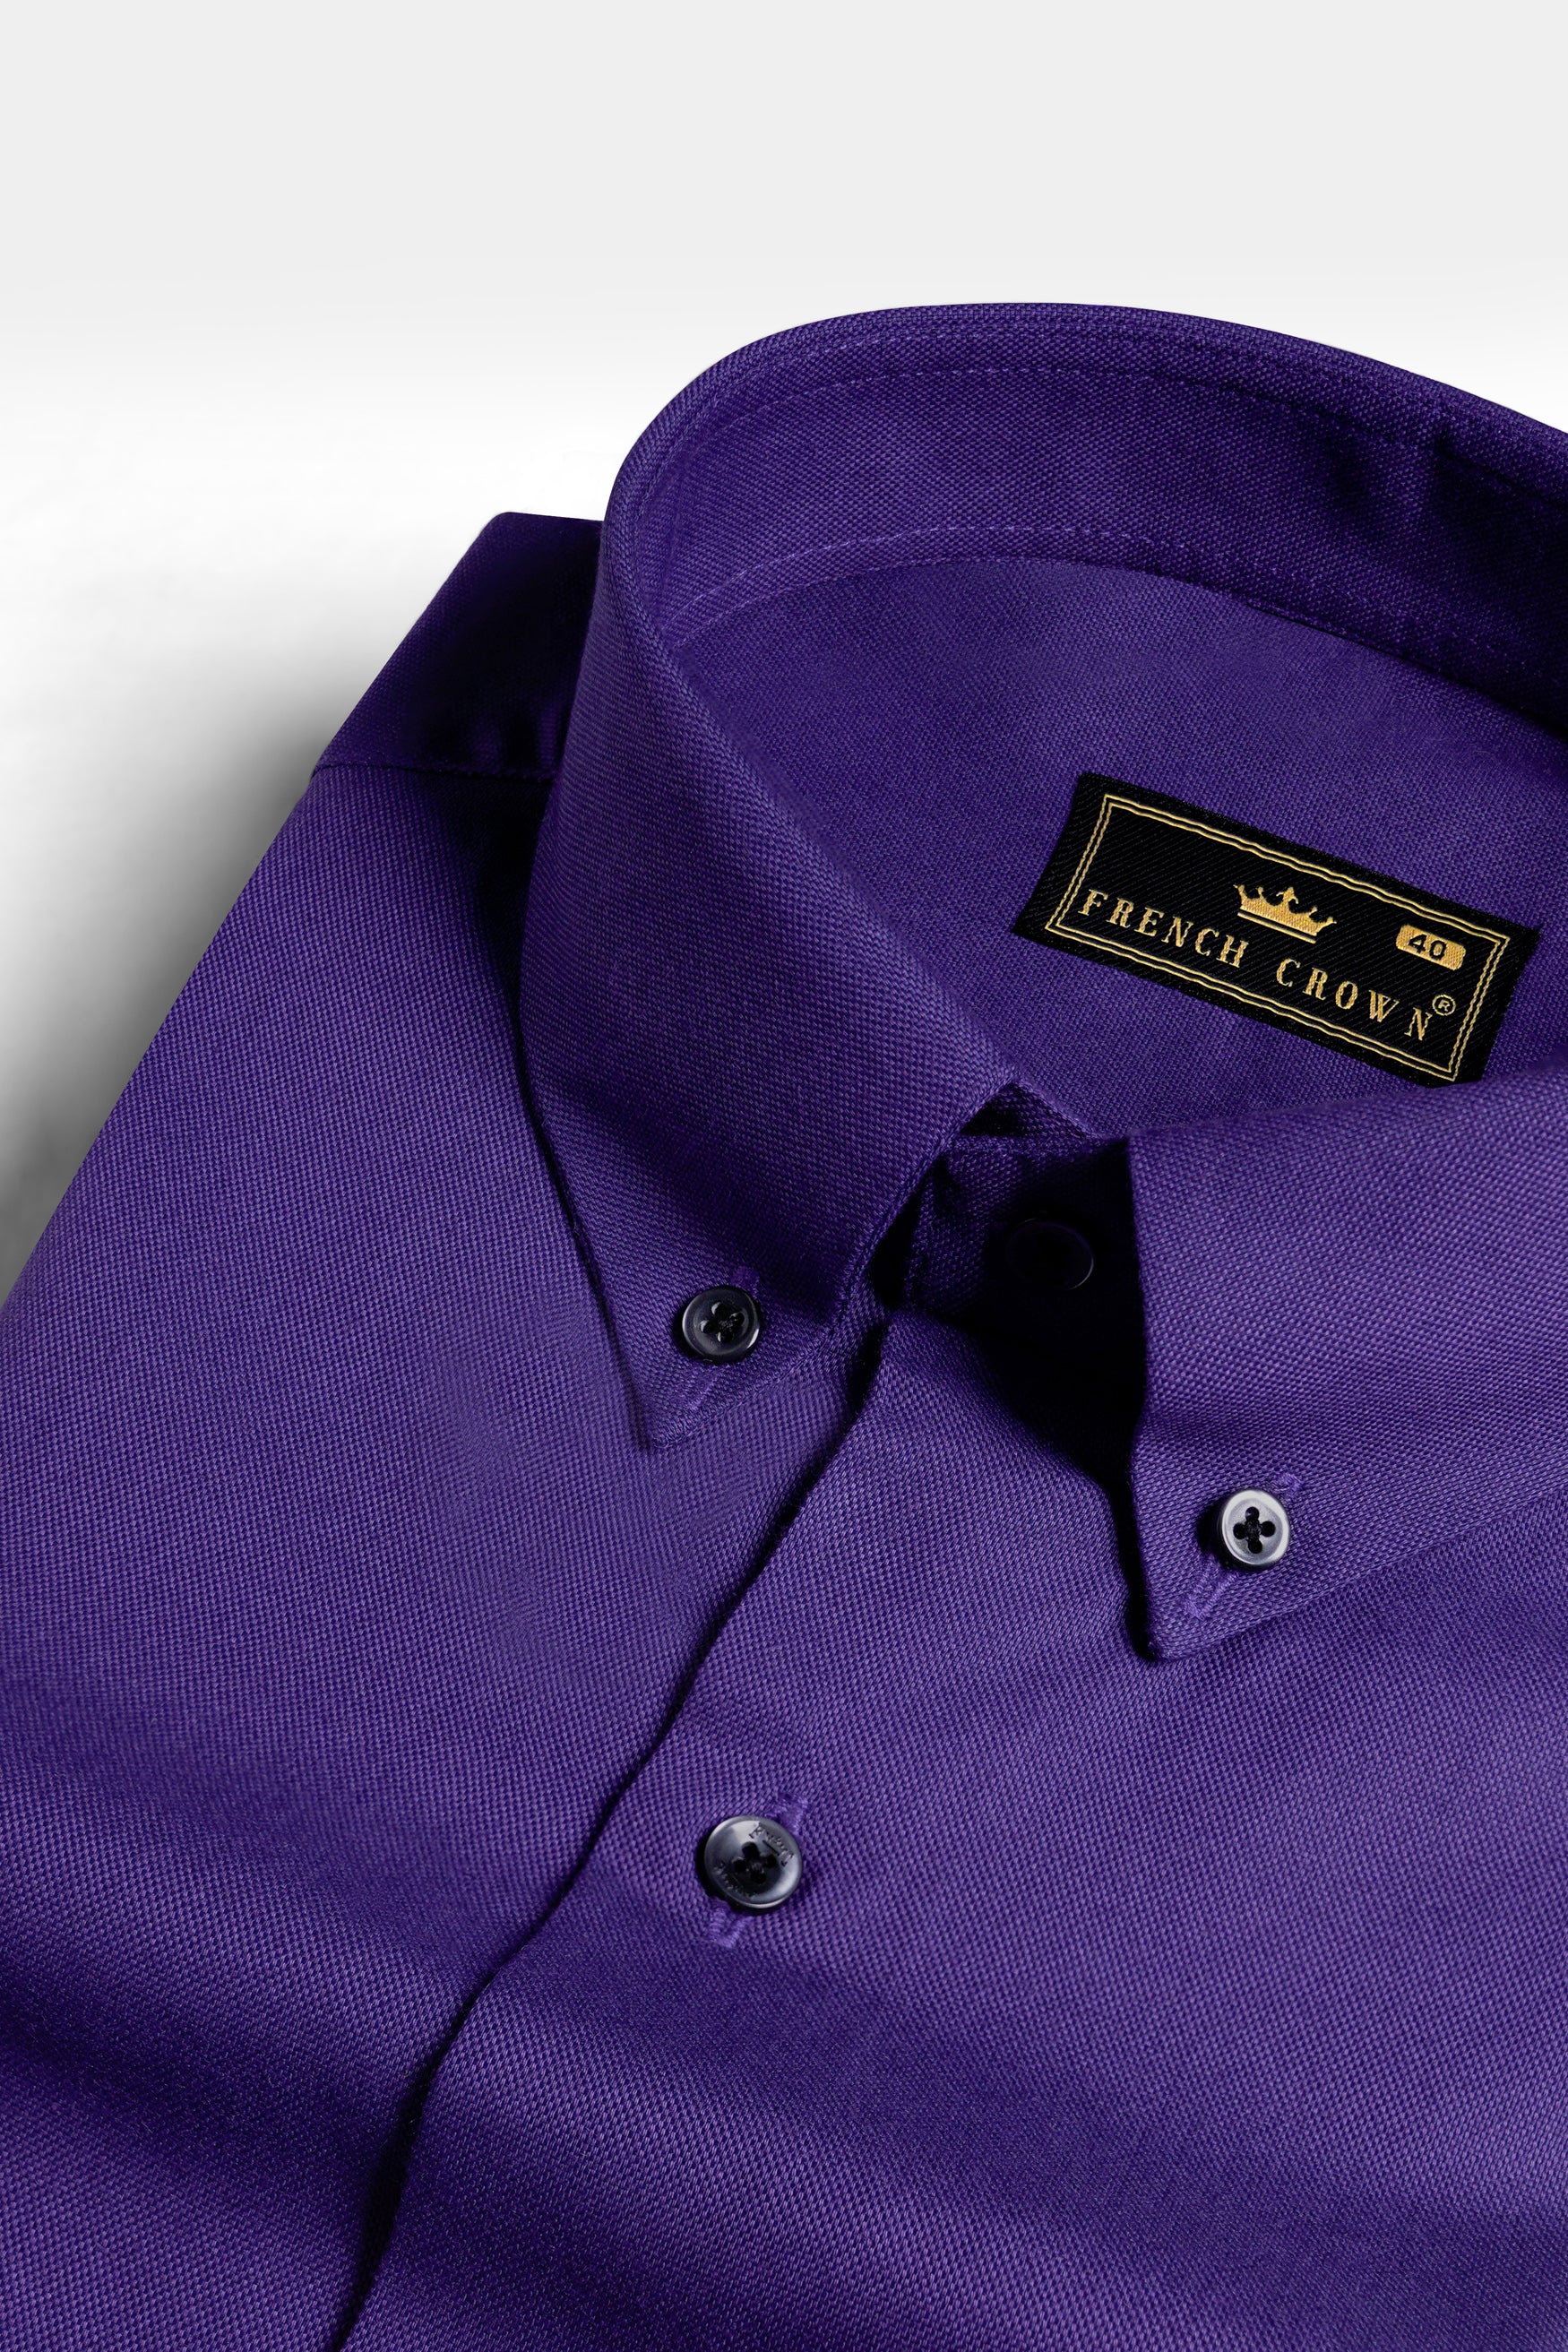 Meteorite Purple Royal Oxford Button Down Shirt